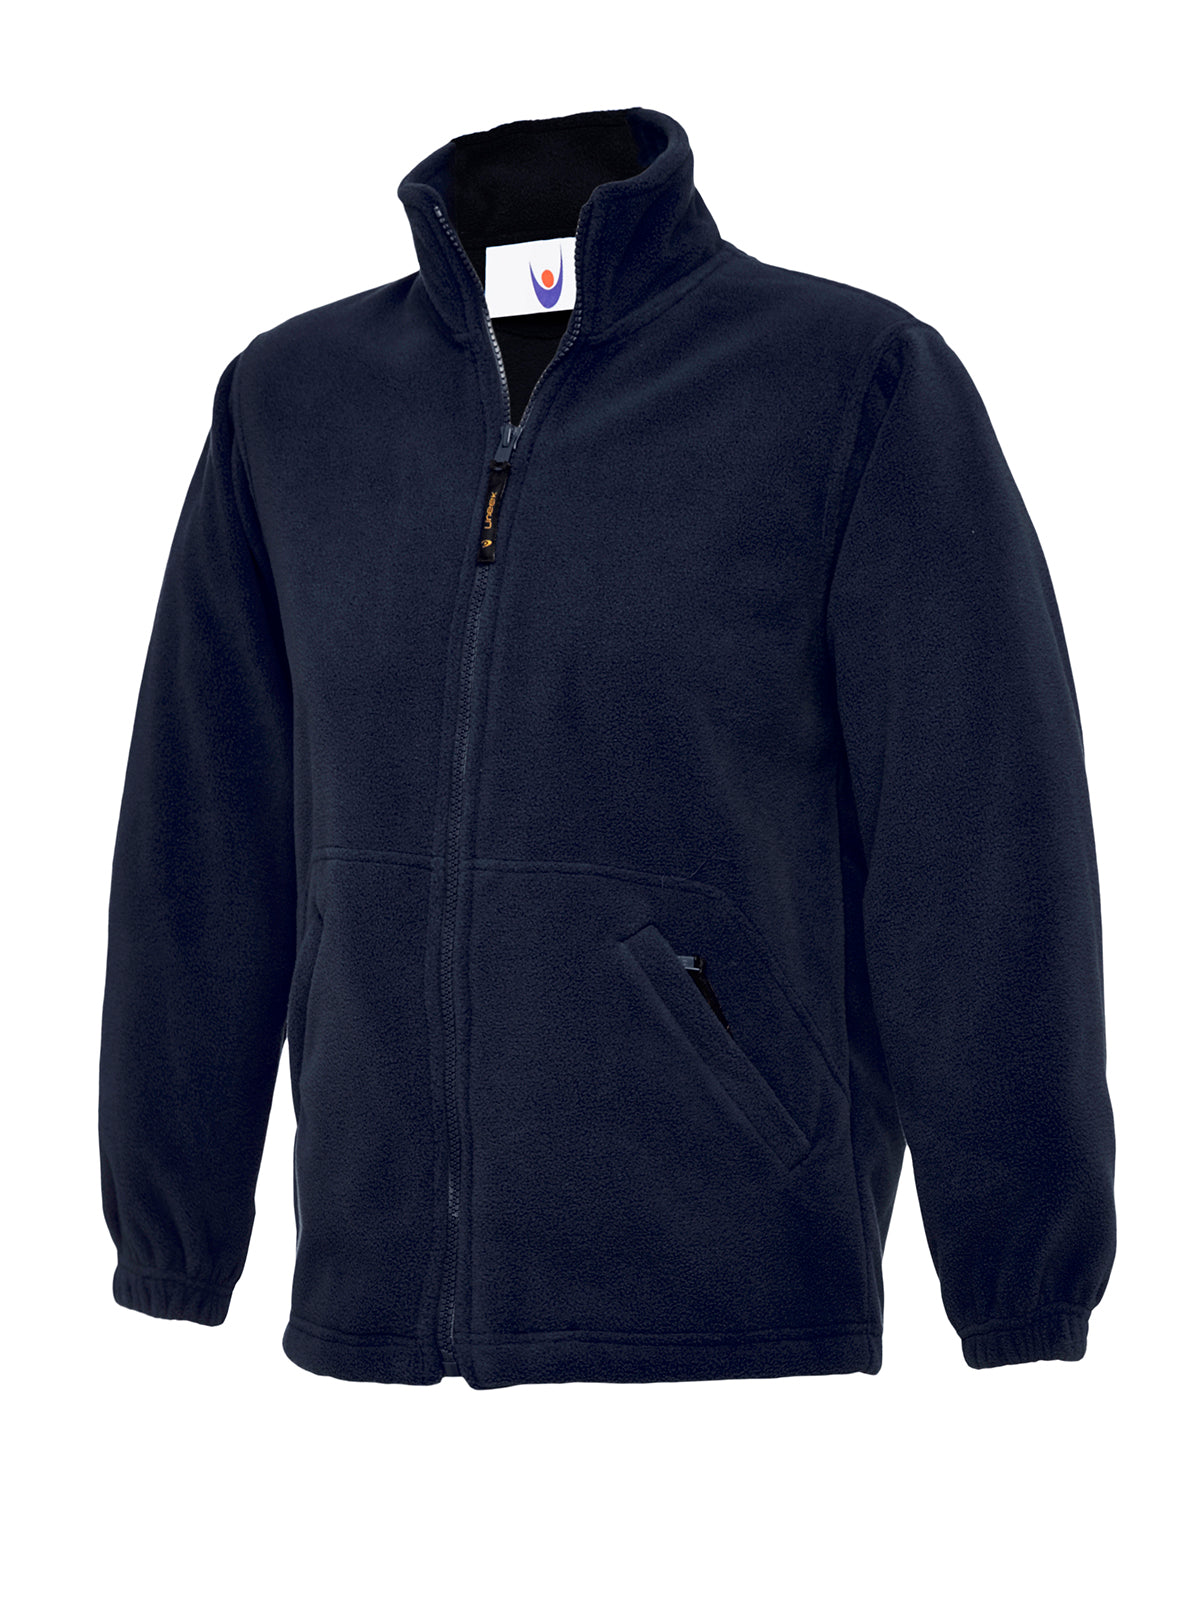 Uneek Childrens Full Zip Micro Fleece Jacket UC603 - Navy